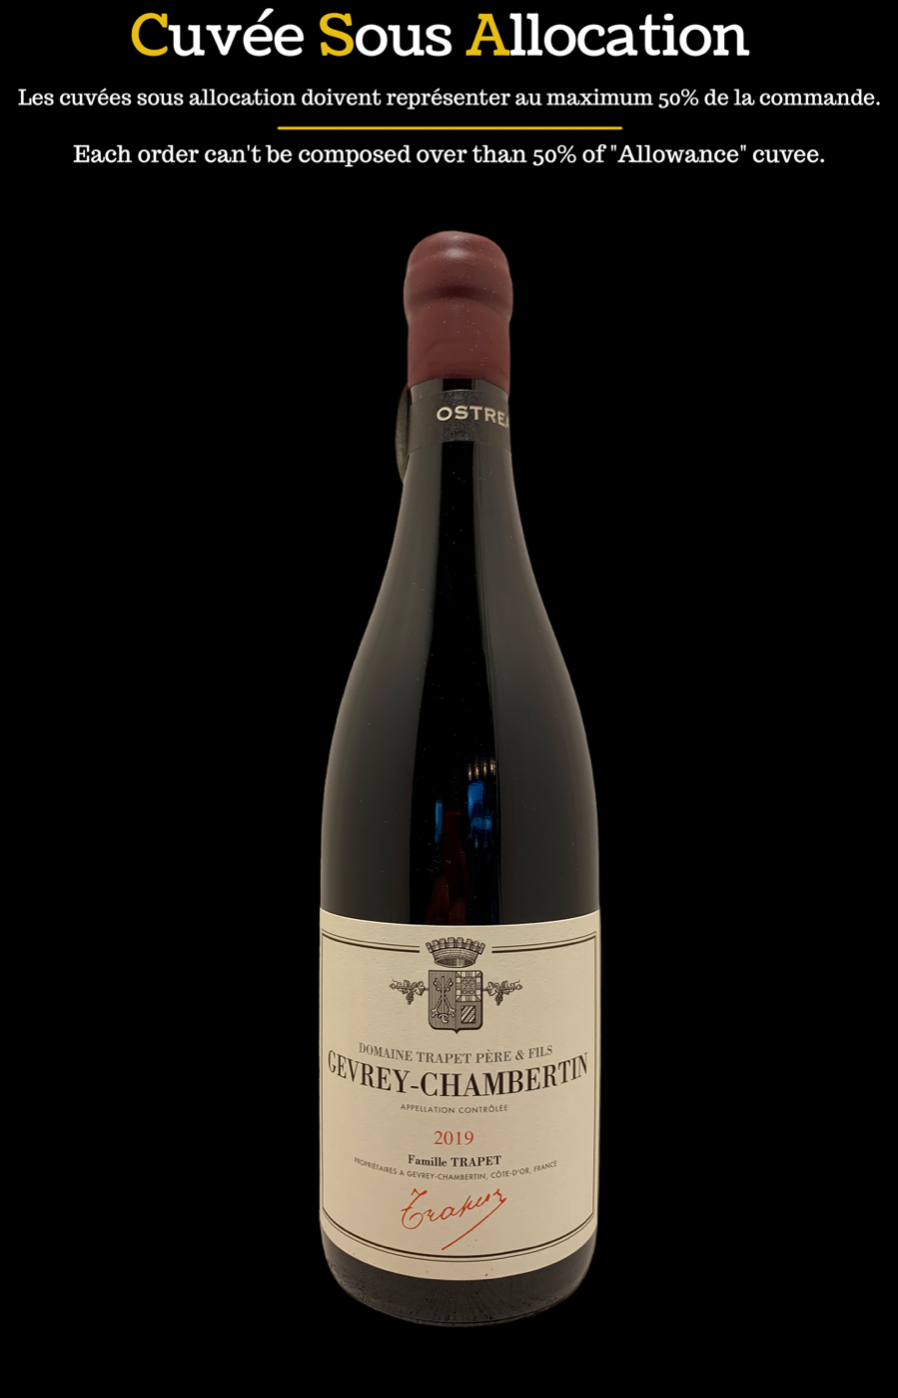 bourgogne vin burgundy wine organic biodynamie famille trapet grevrey chambertin ostréa